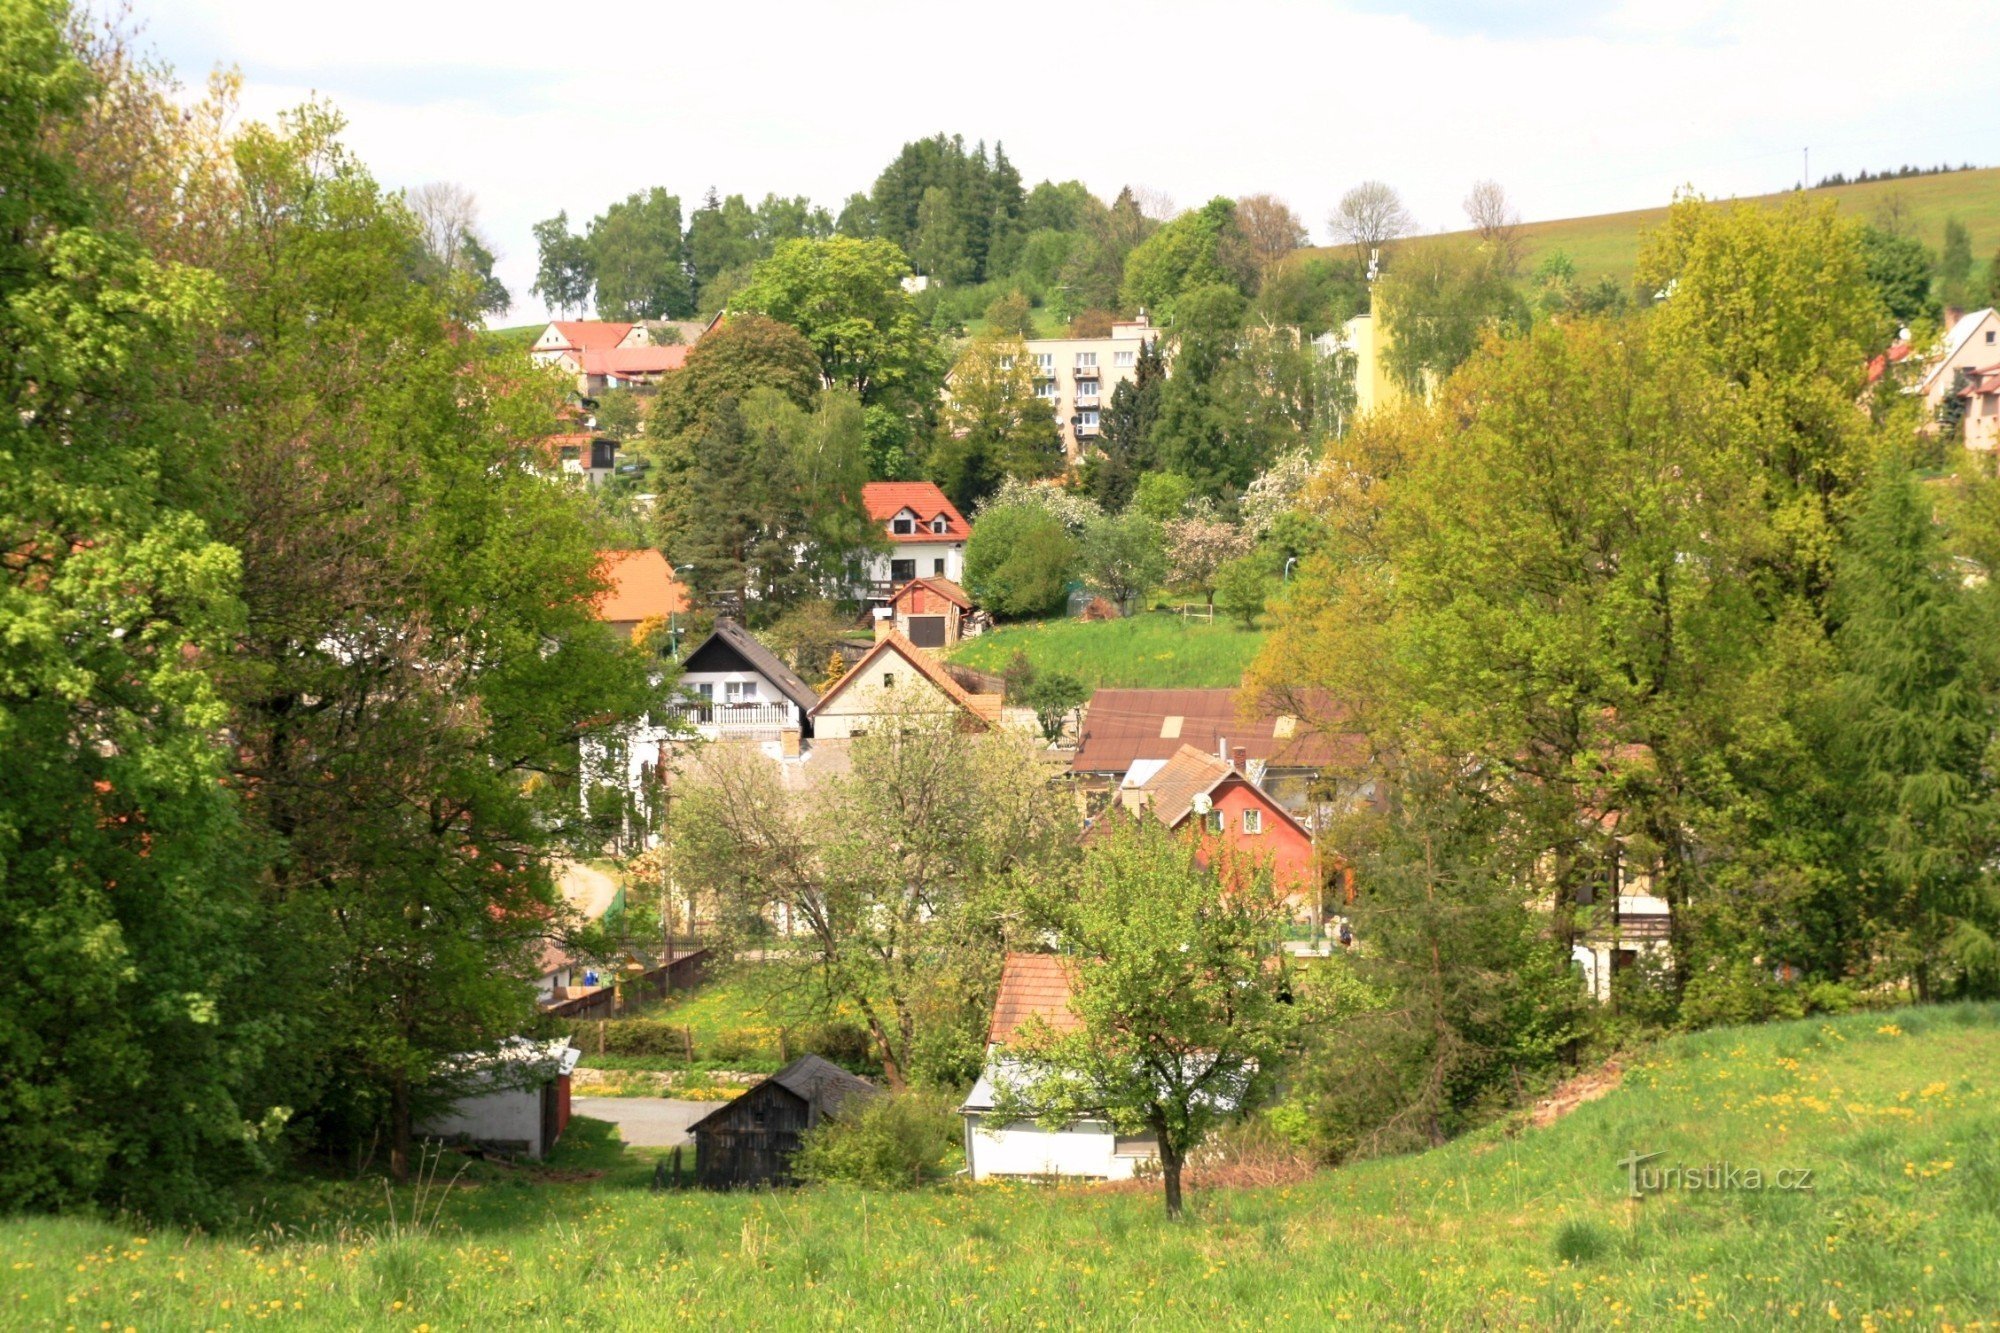 Krusemburg